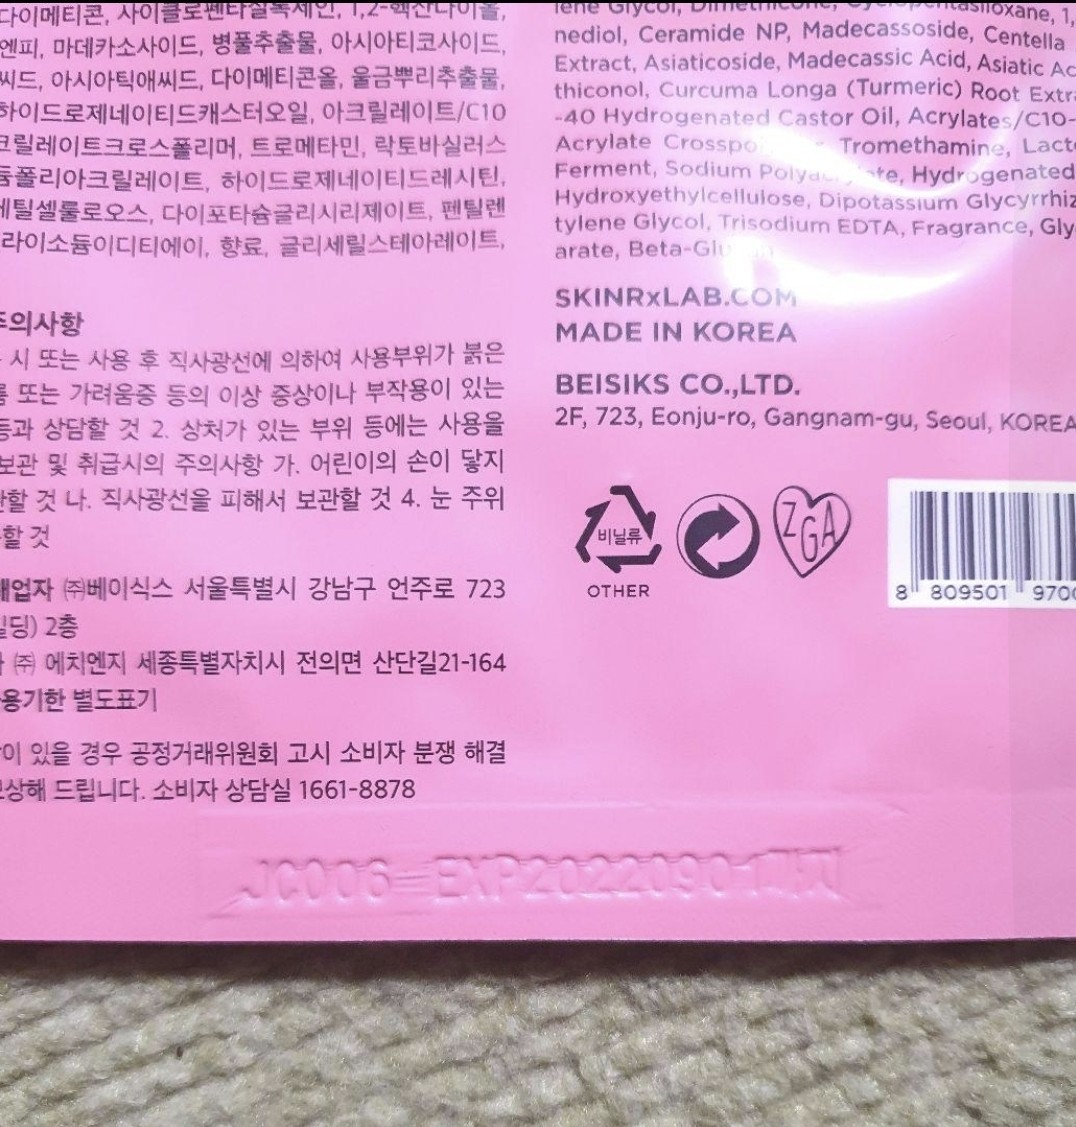 新品 ネイチャーリパブリック スネイル ソリューション 化粧水、乳液 韓国コスメ_画像10